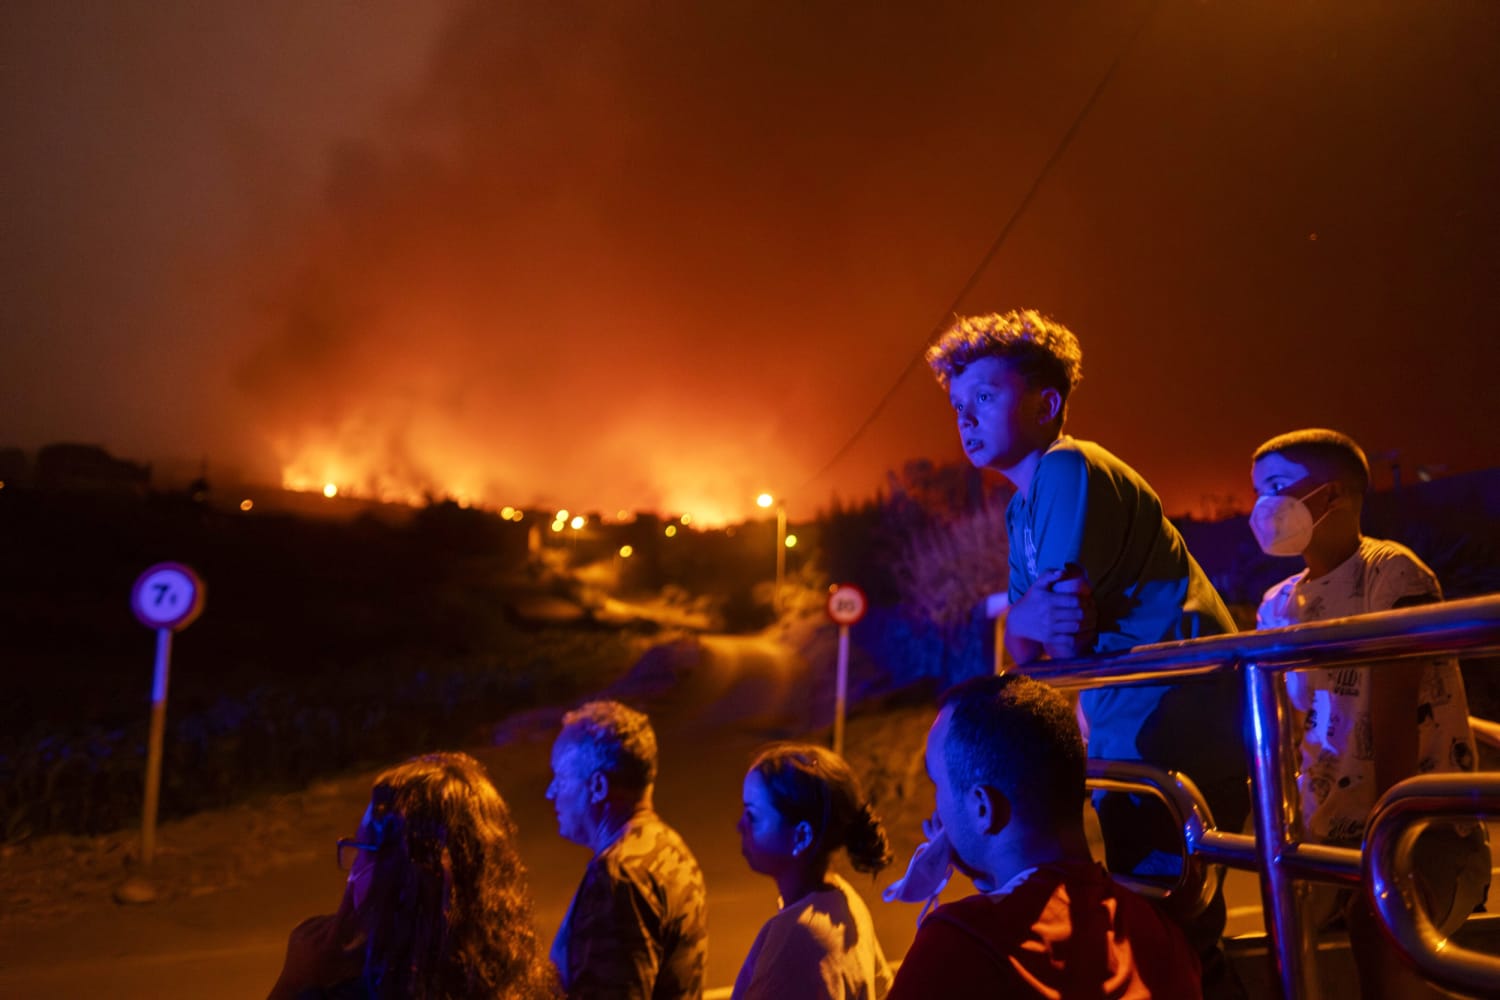 Incendio forestal en Tenerife de España se inició deliberadamente, dice funcionario